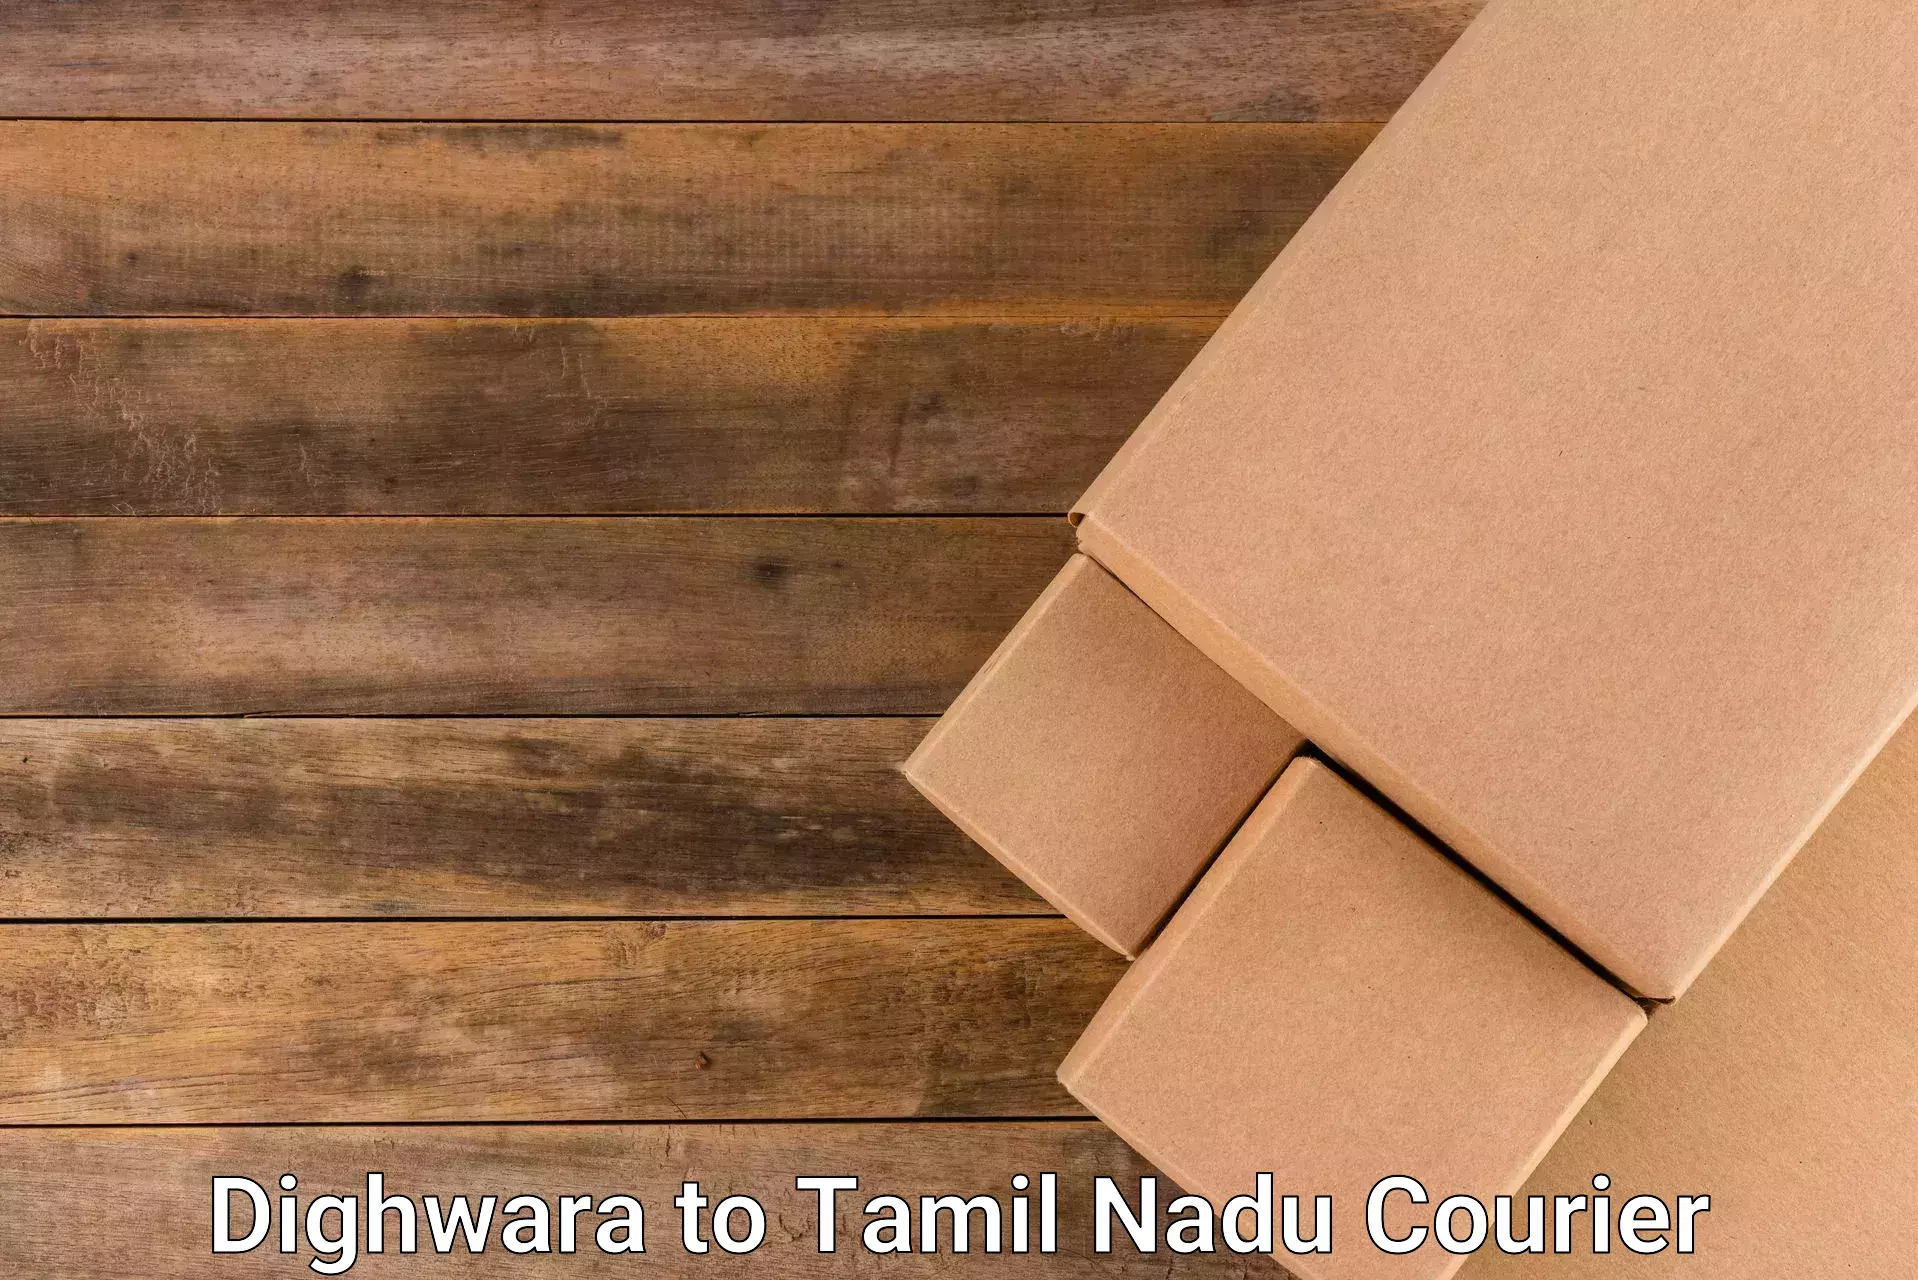 High value parcel delivery Dighwara to Tamil Nadu